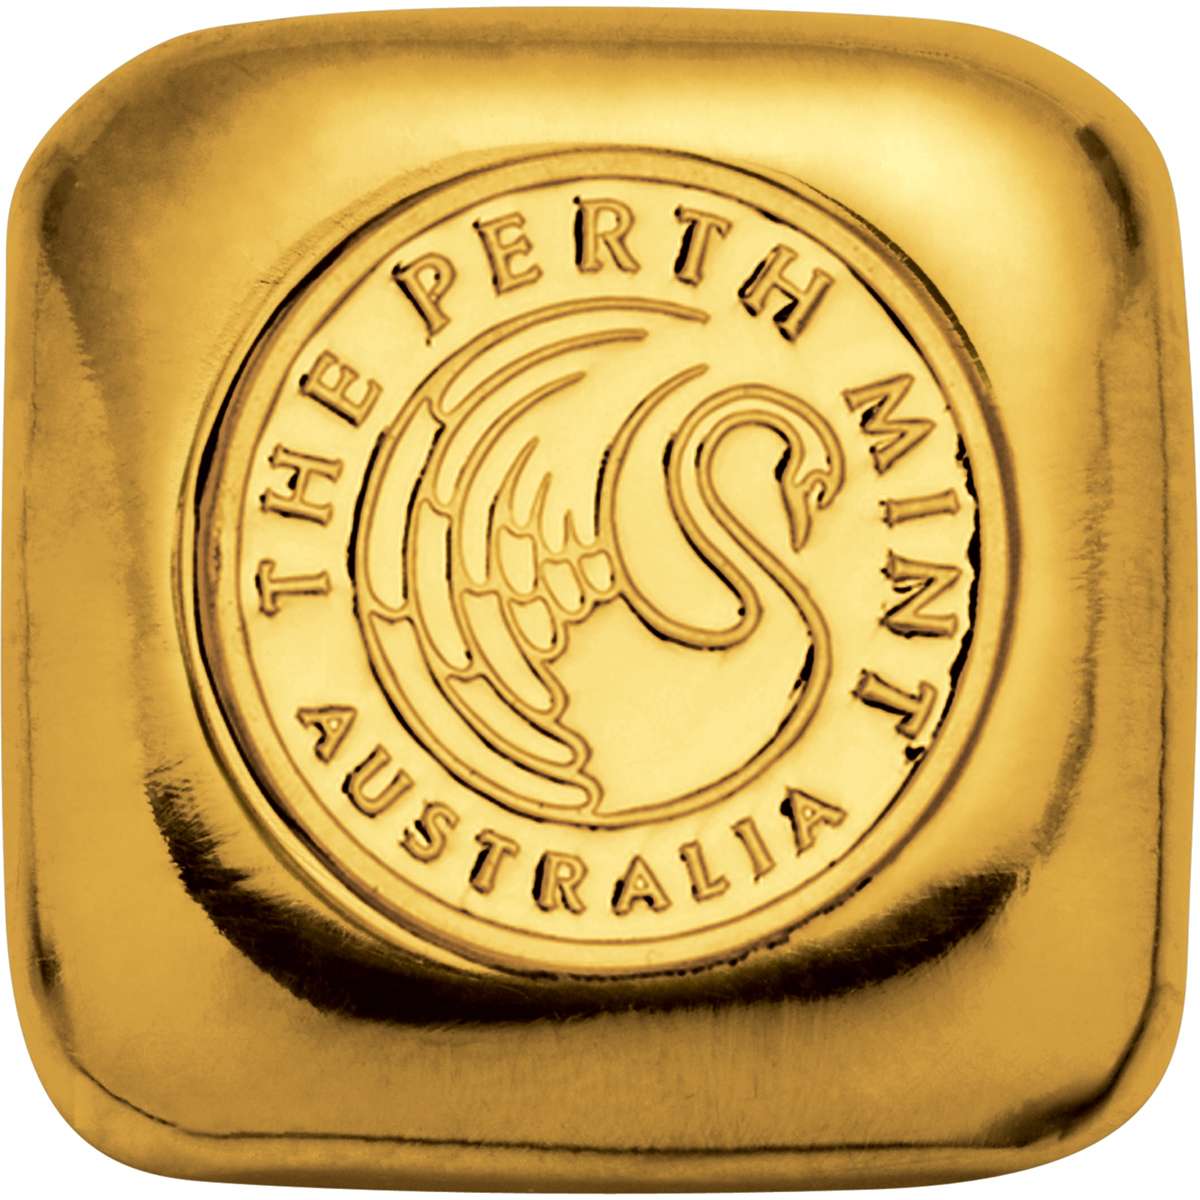 1 oz Perth Mint Gold Bullion Cast Bar